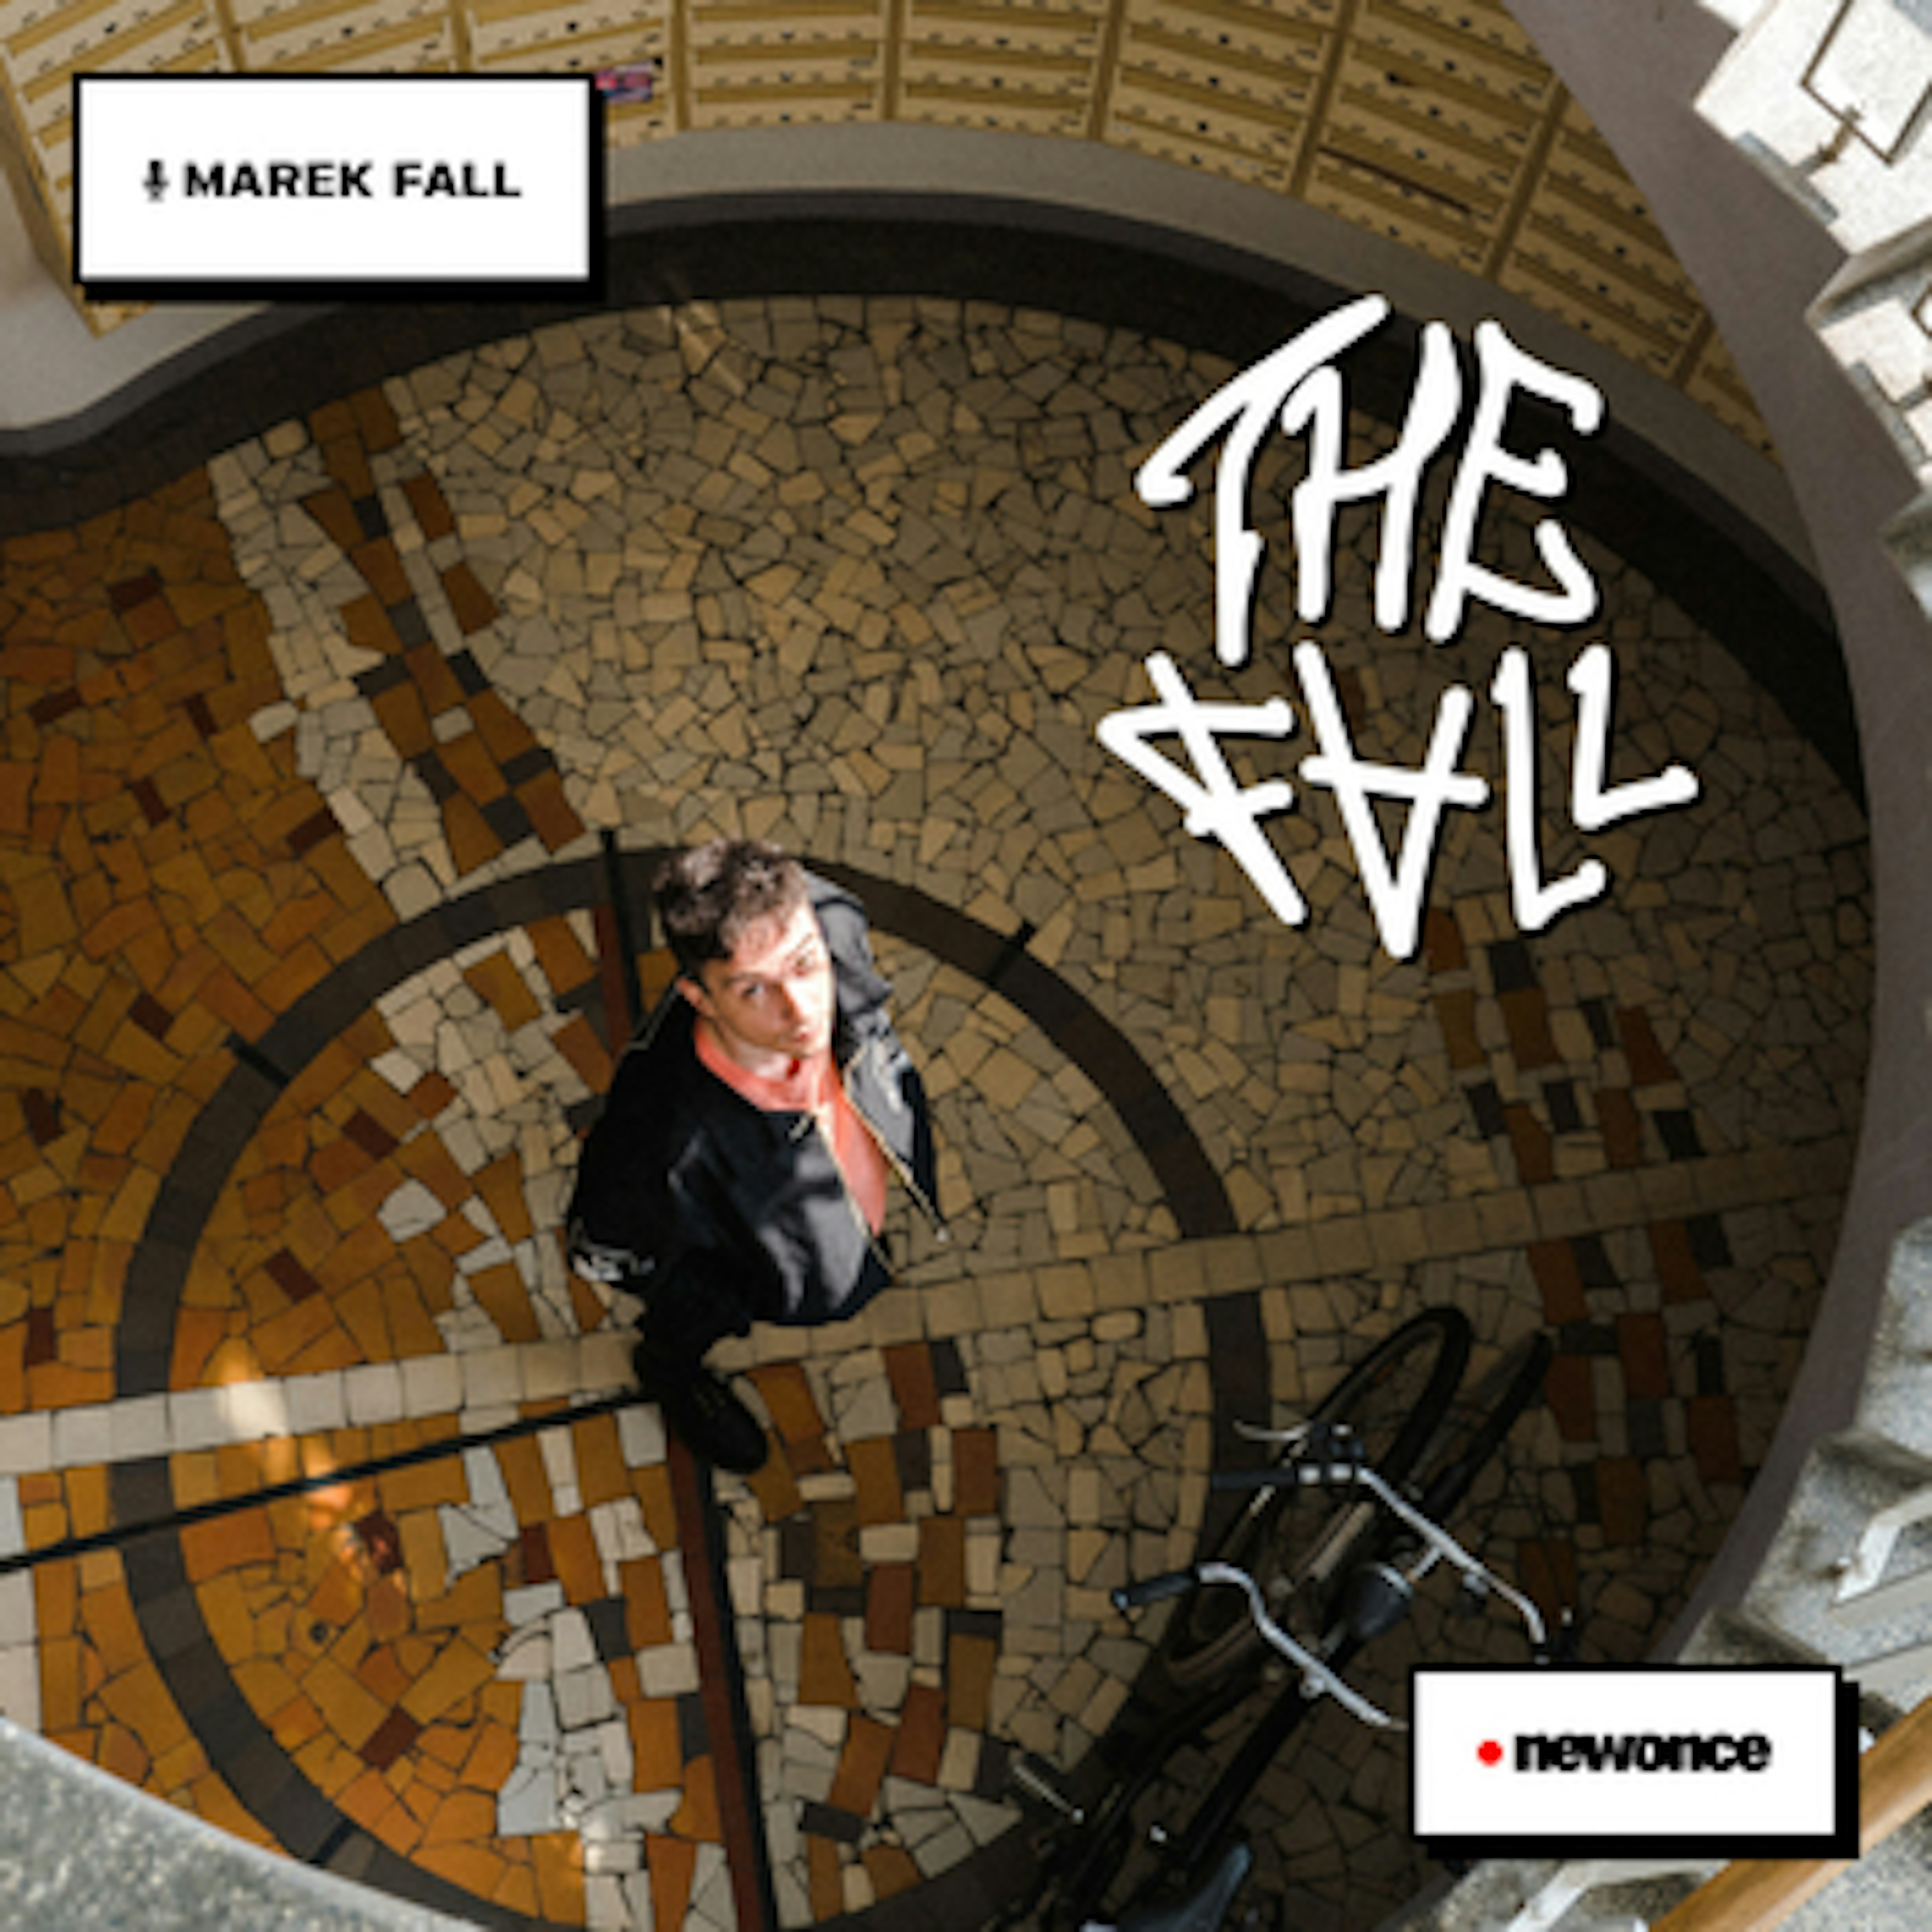 THE FALL - The Fall: muzyka dla dorosłych; mocne ogłoszenie z Offu